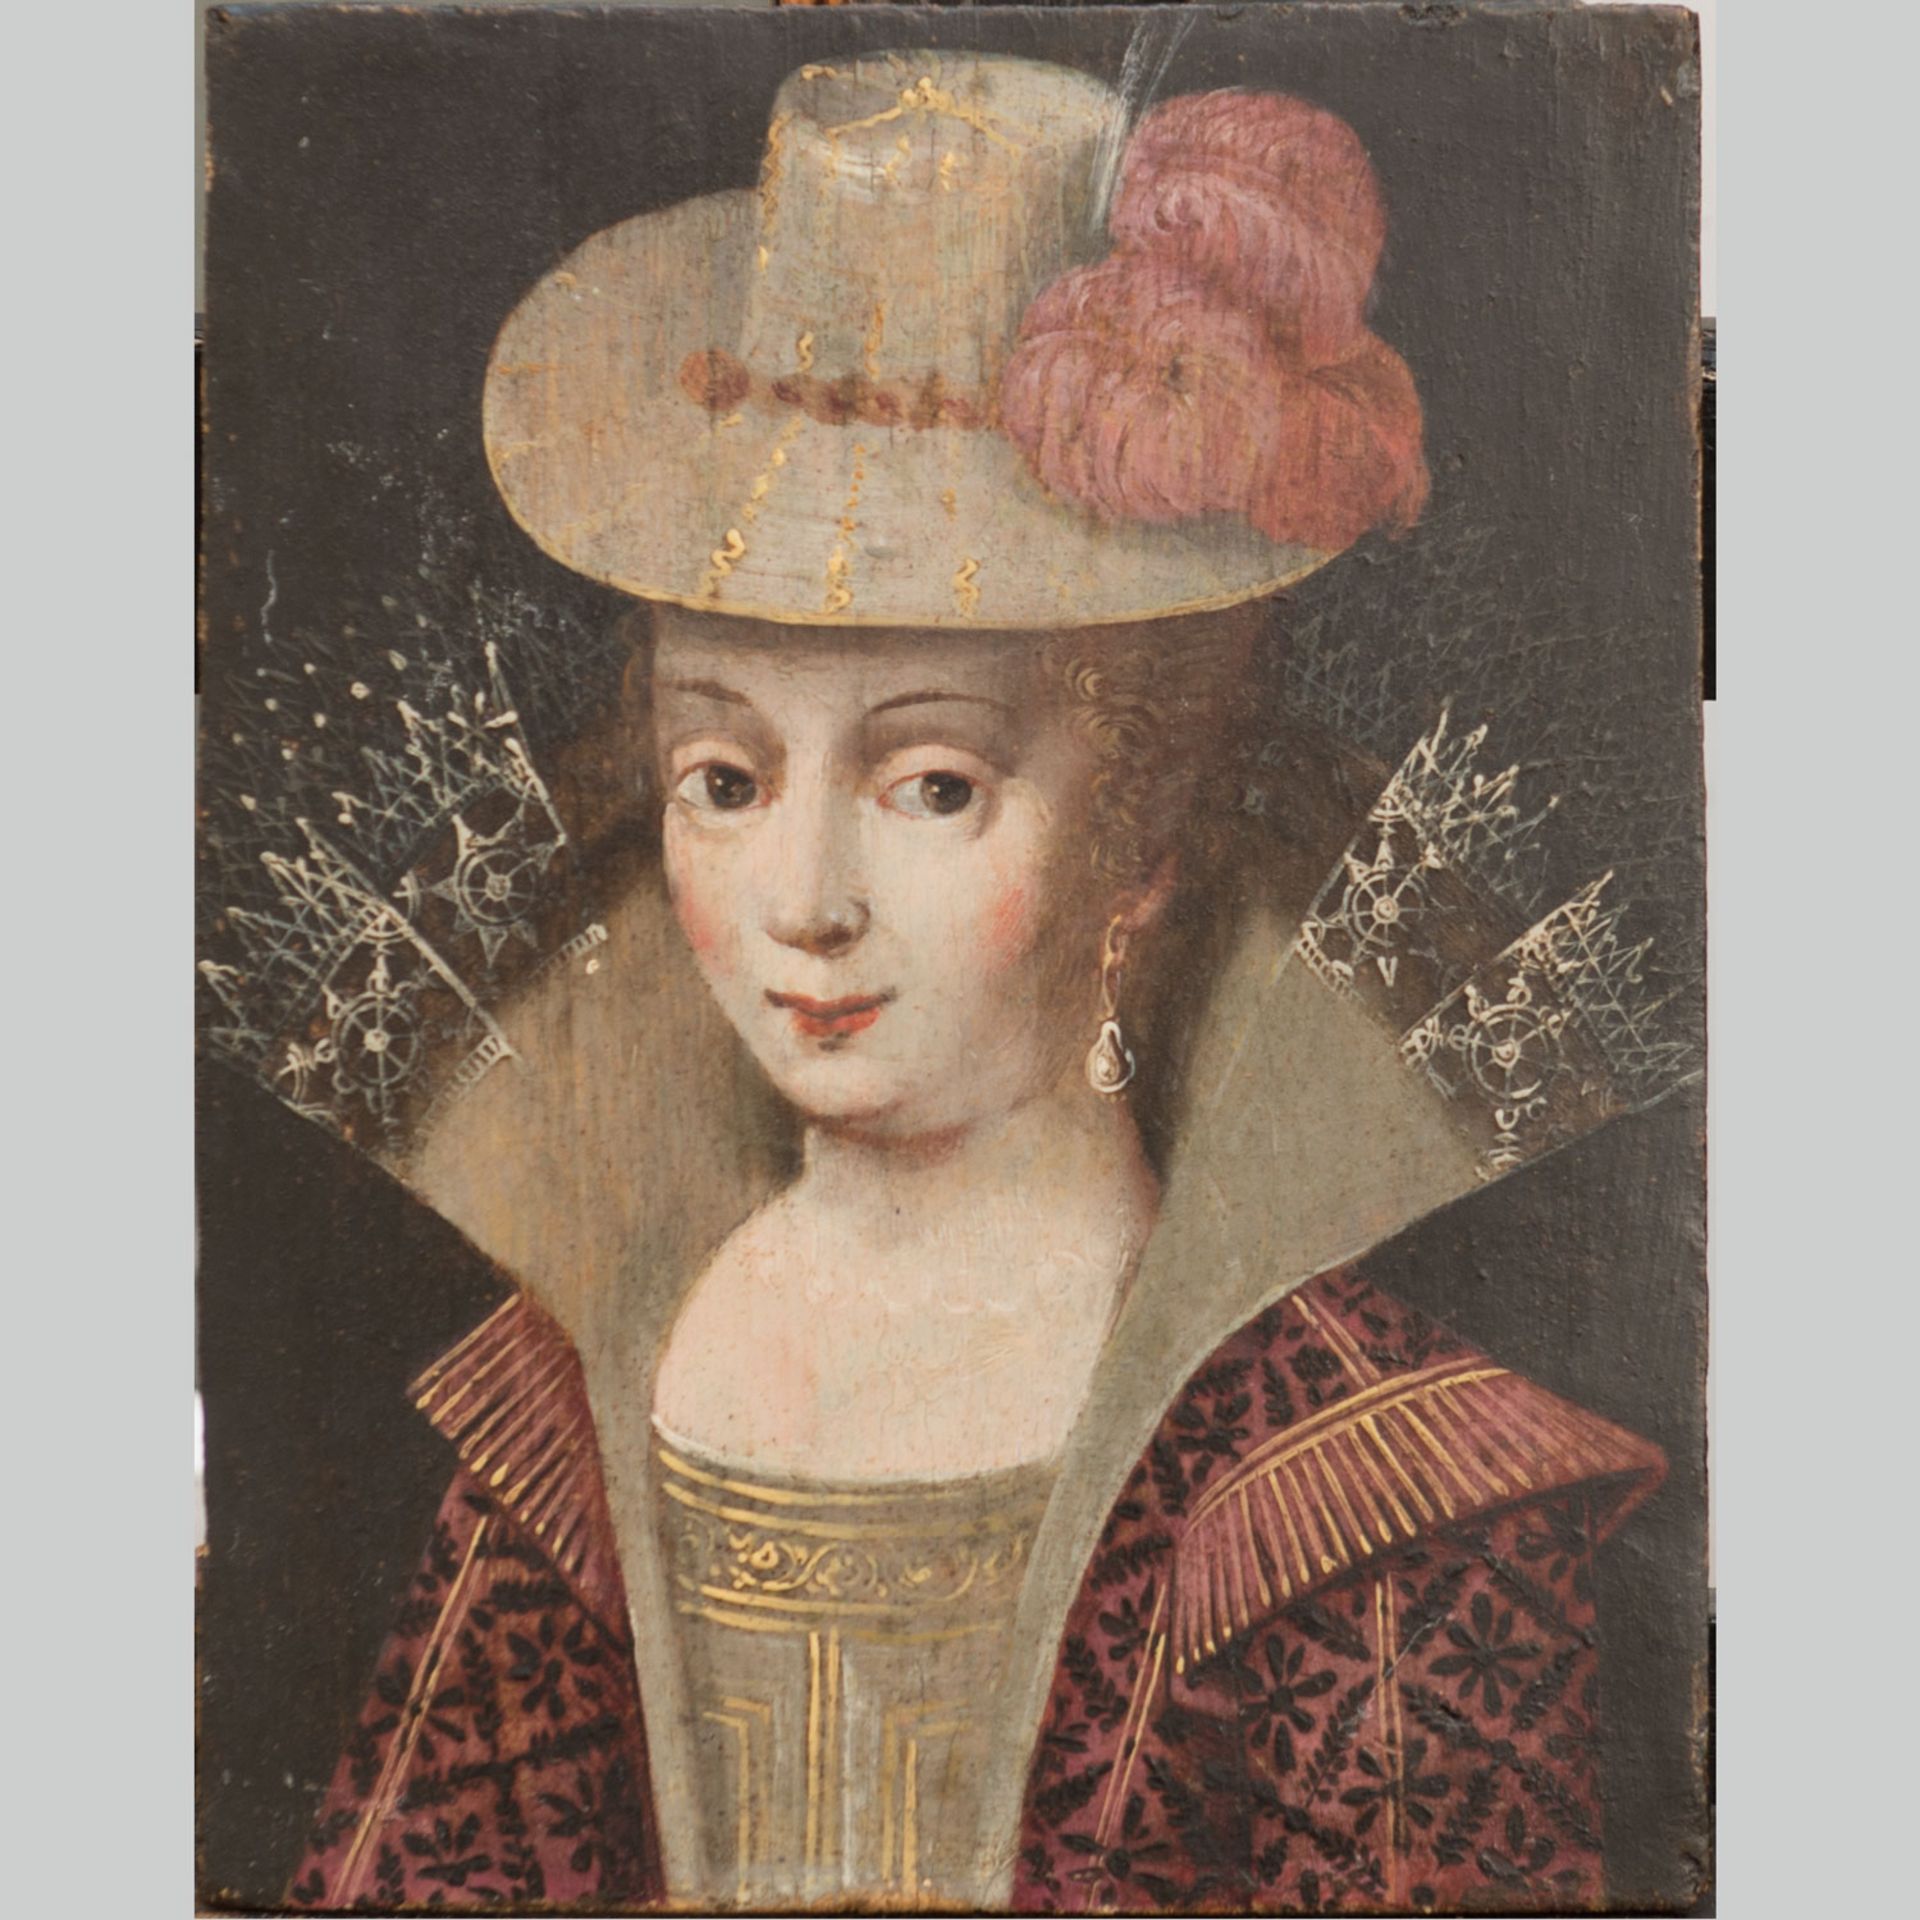 French artist around 1600